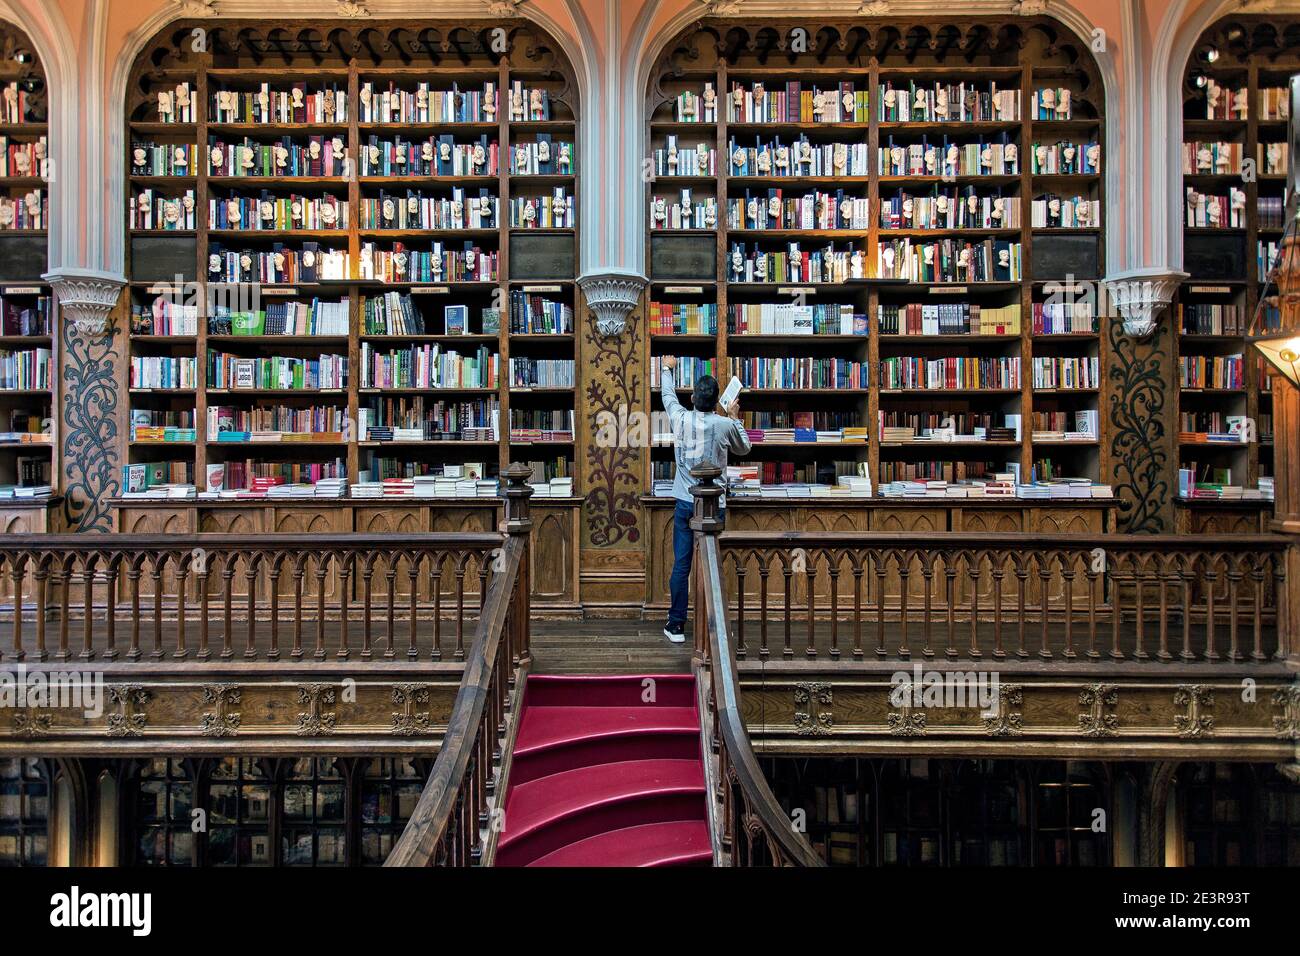 Librerie famose immagini e fotografie stock ad alta risoluzione - Alamy